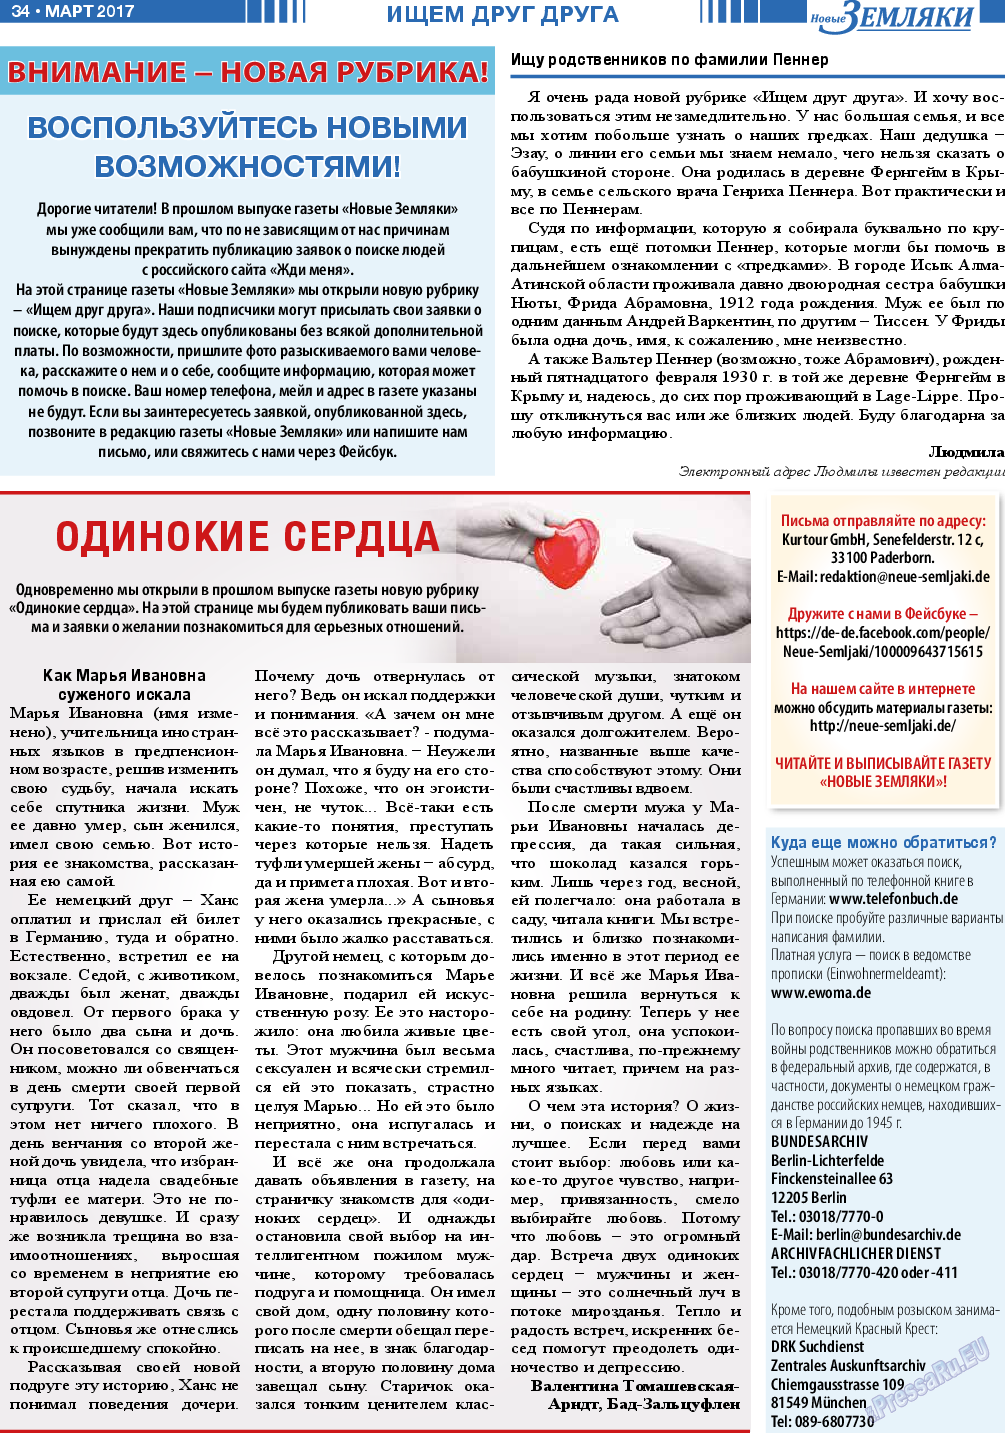 Новые Земляки, газета. 2017 №3 стр.34